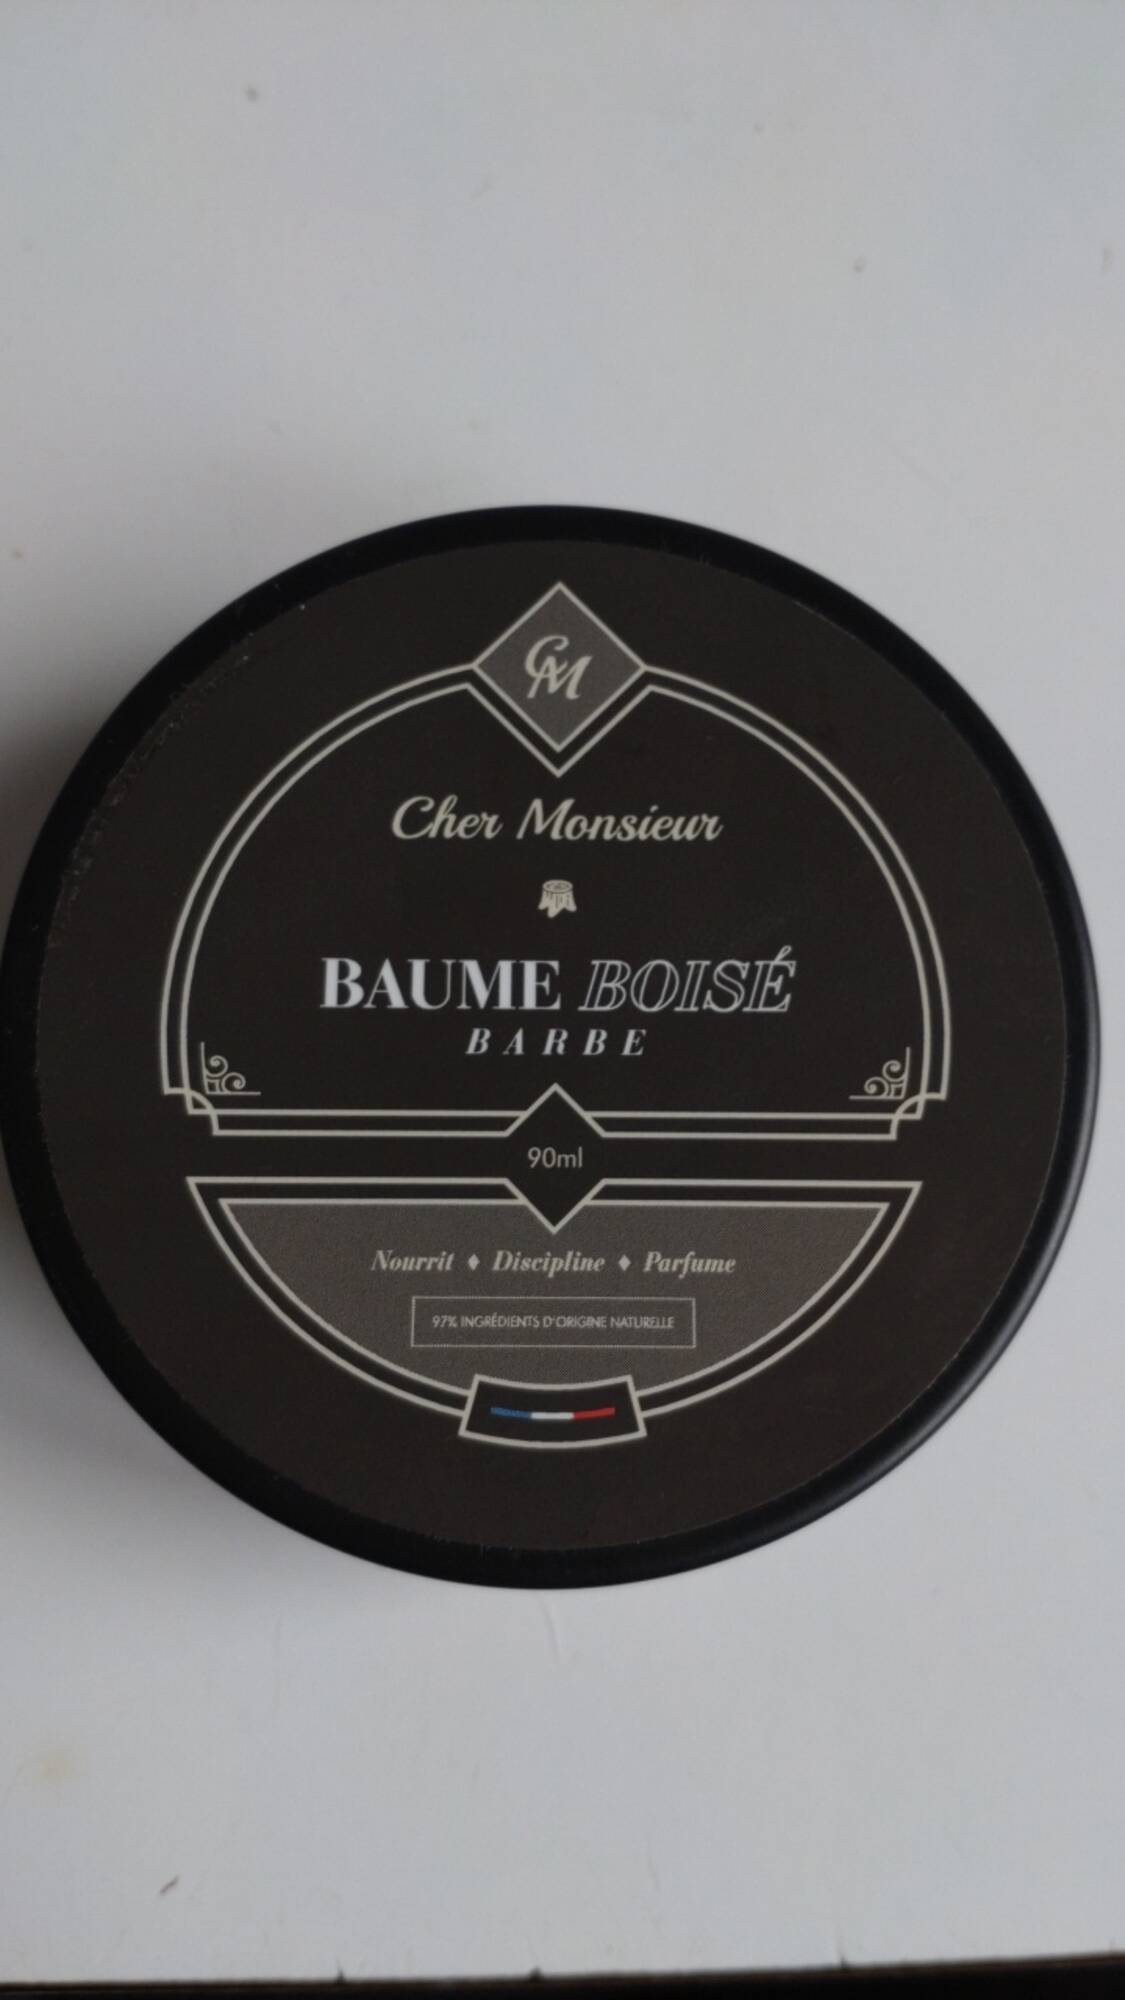 CHER MONSIEUR - Baume boisé barbe 